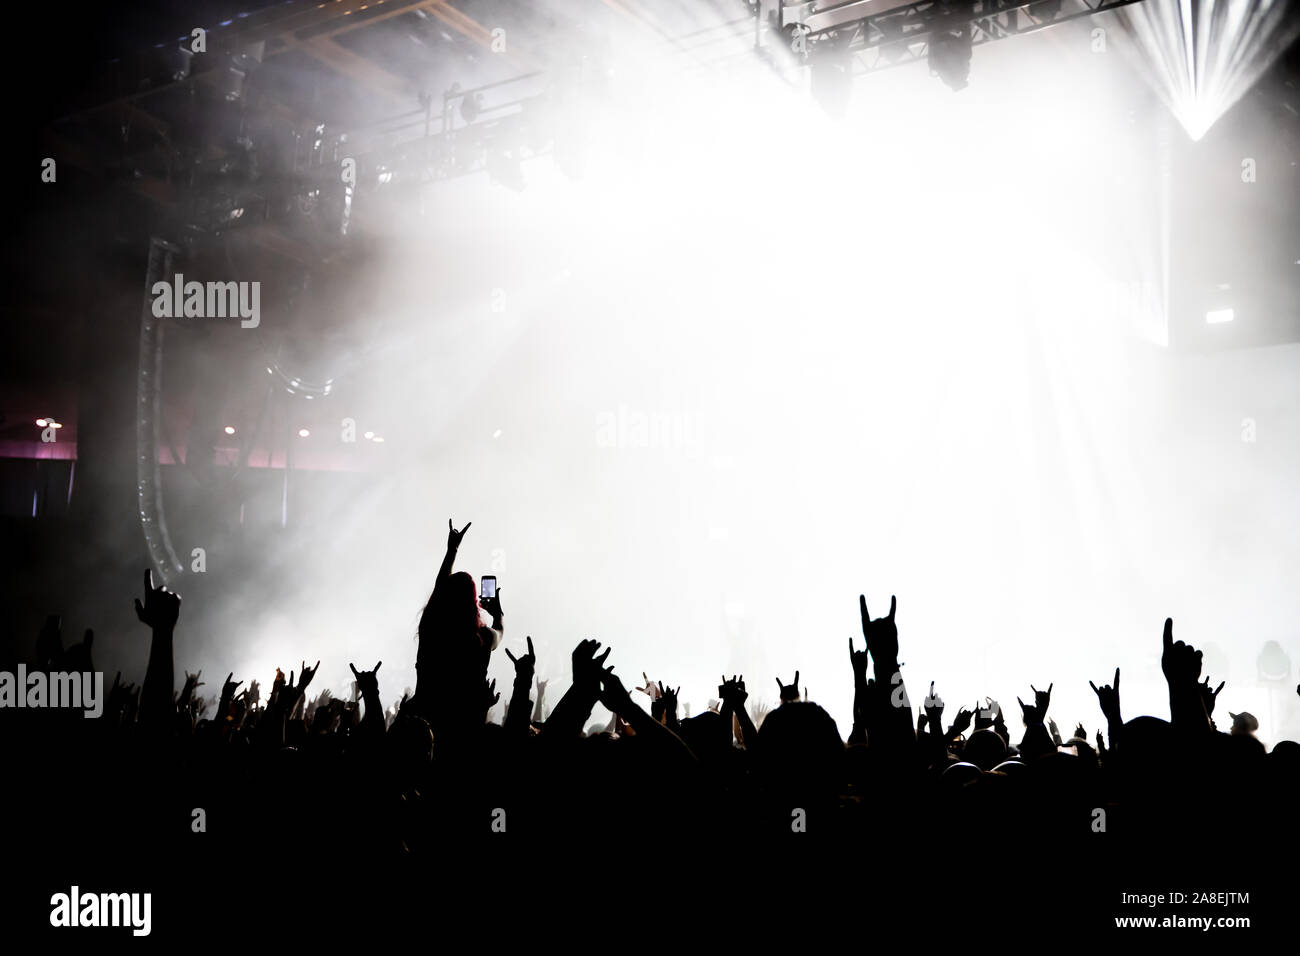 Una silhouette di fan il tifo per una banda che è irriconoscibile sulla fase dalla fase luci e nebbia. Foto Stock